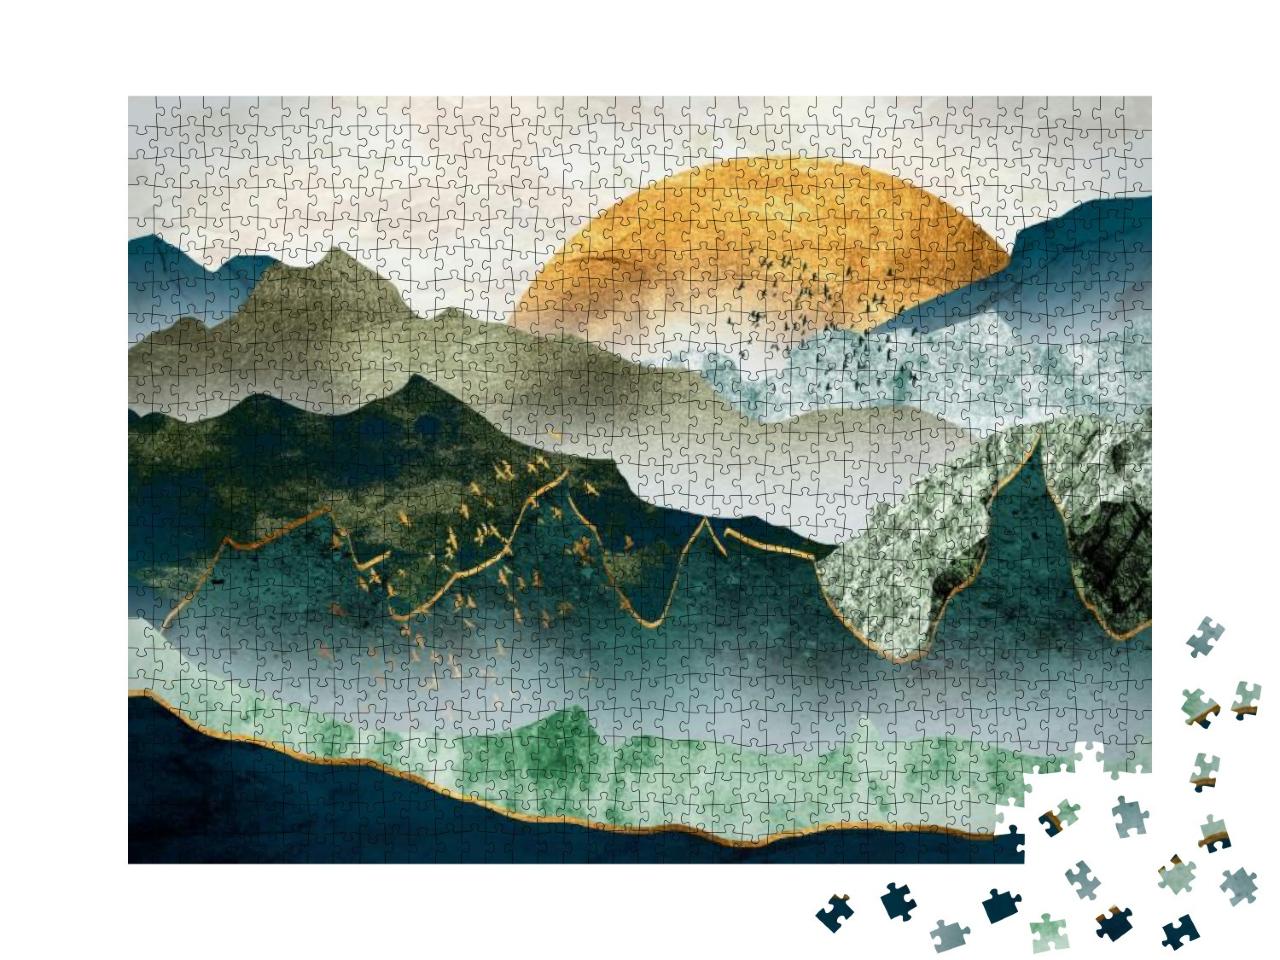 Puzzle 1000 Teile „Grün-goldene Berge bei Sonnenuntergang, Vogelschwarm“